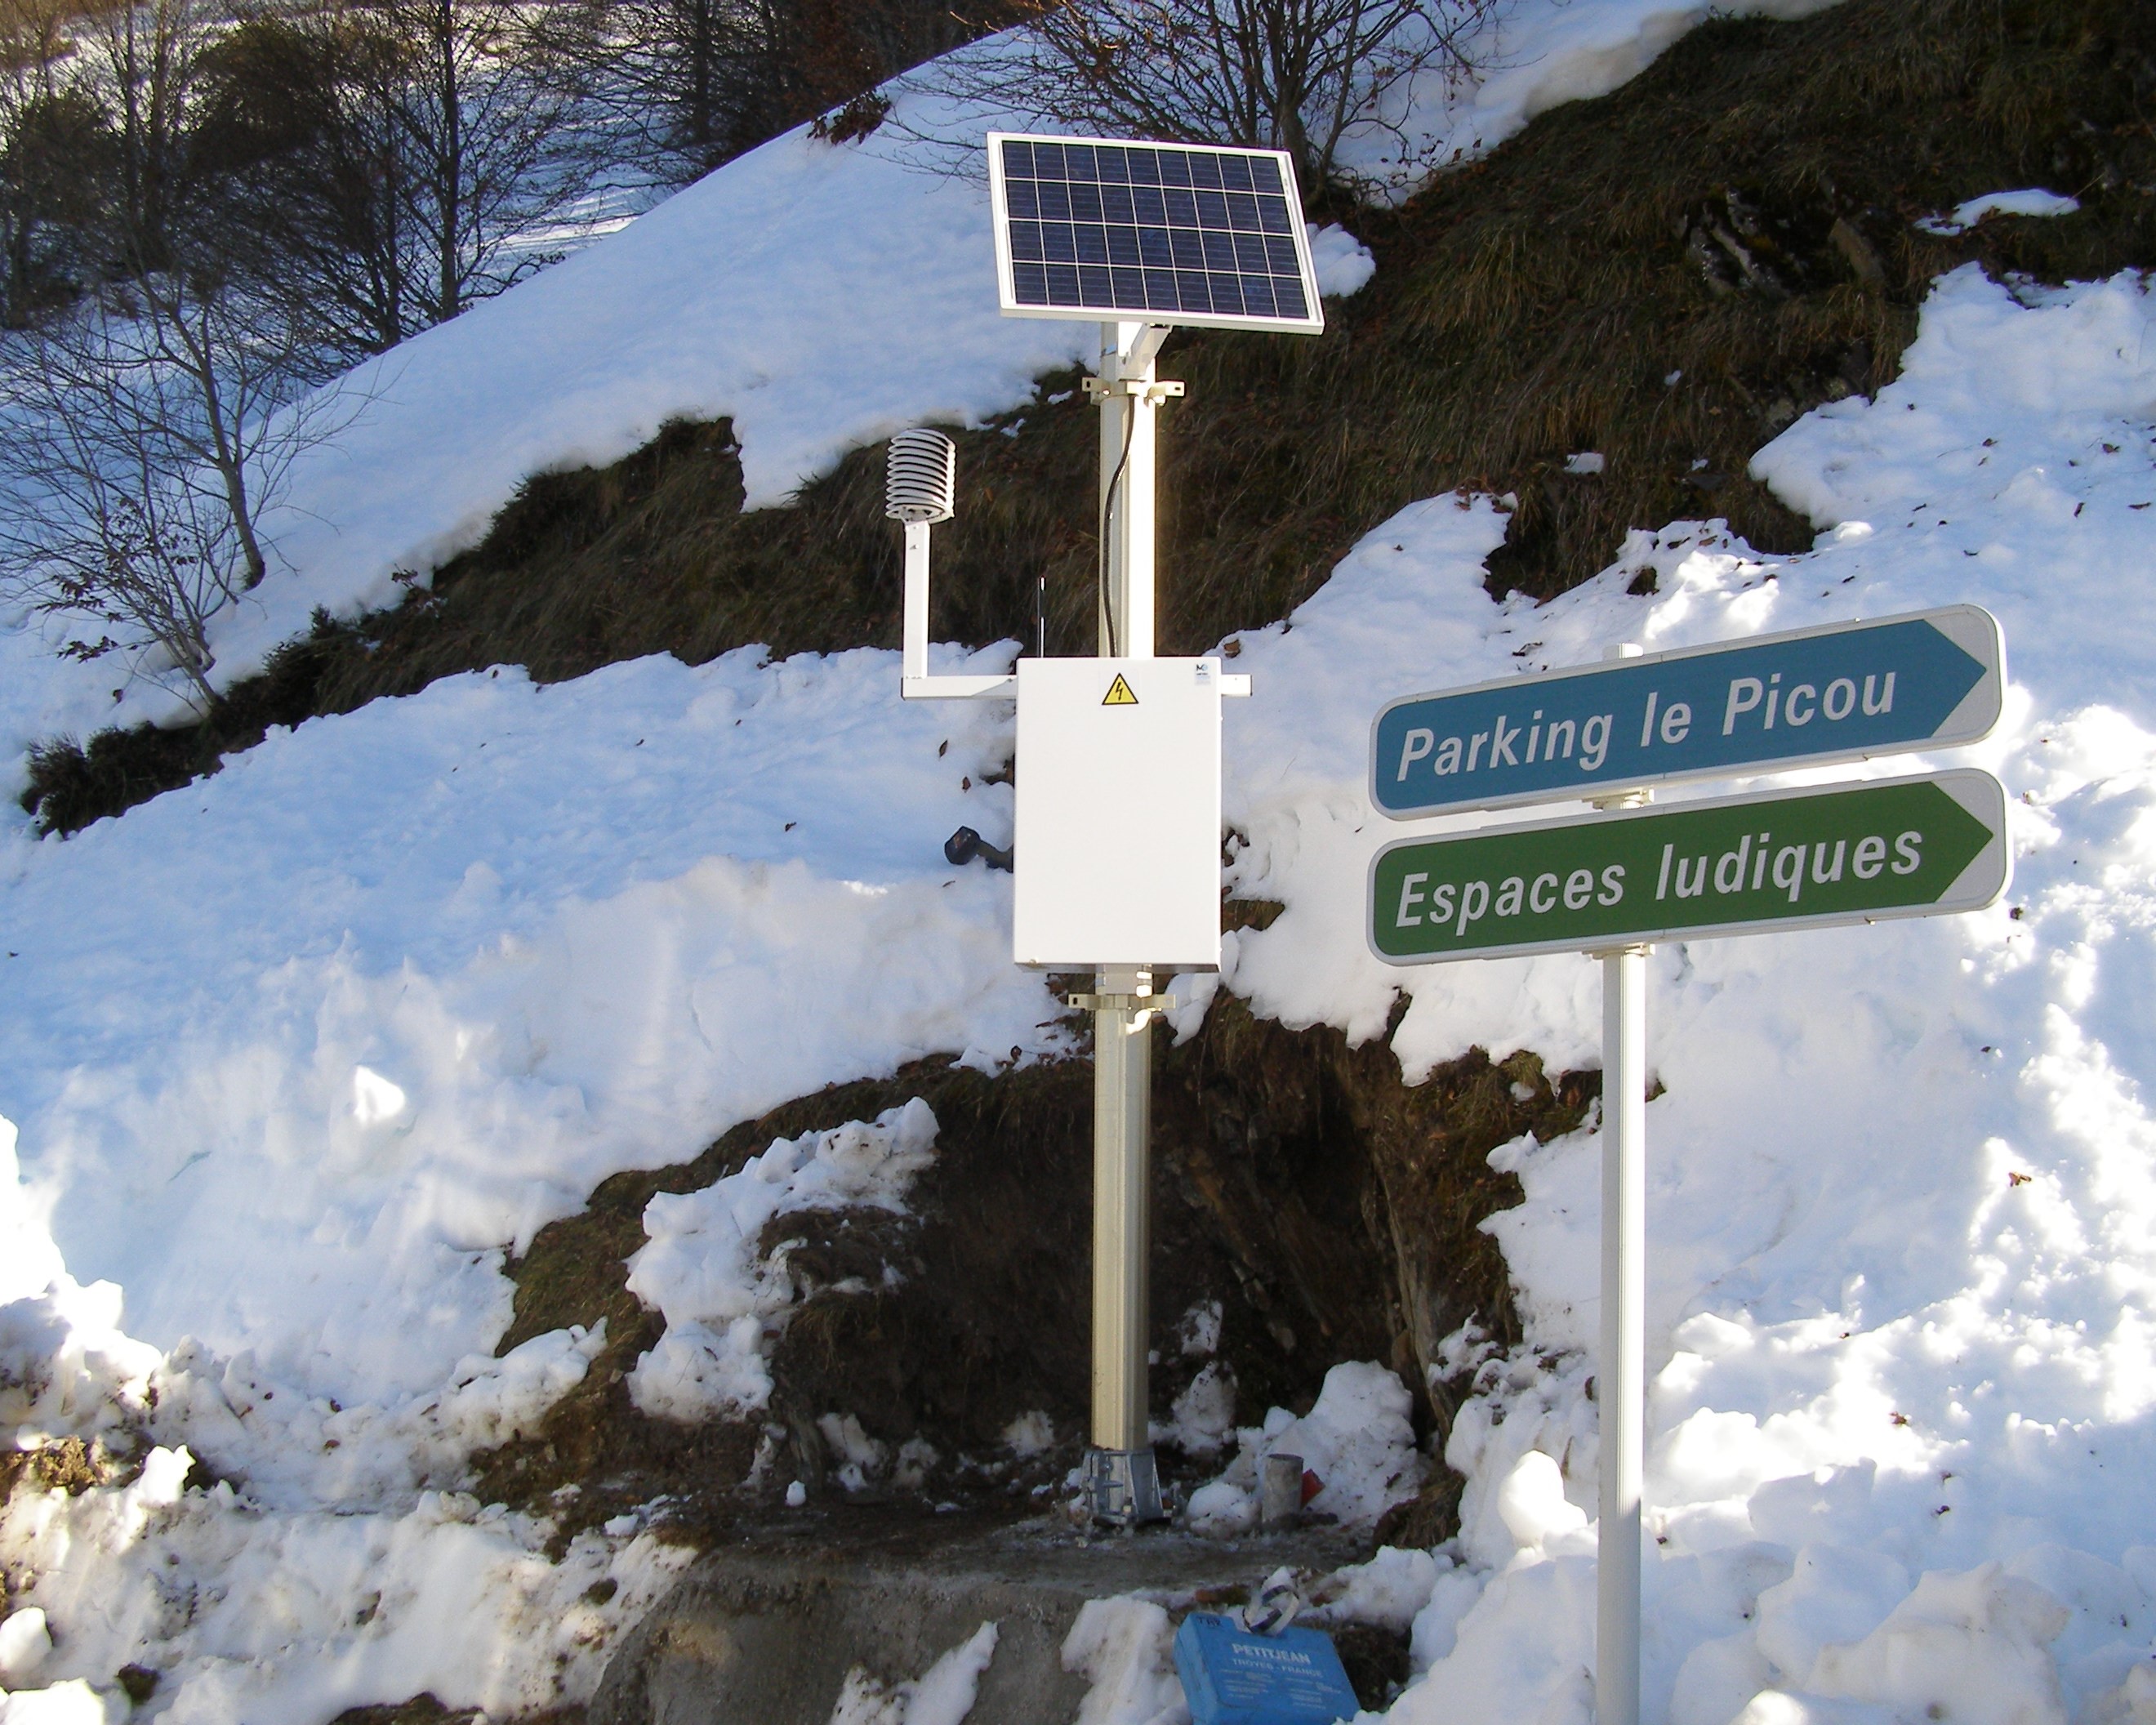 Estación meteorológica de viabilidad invernal